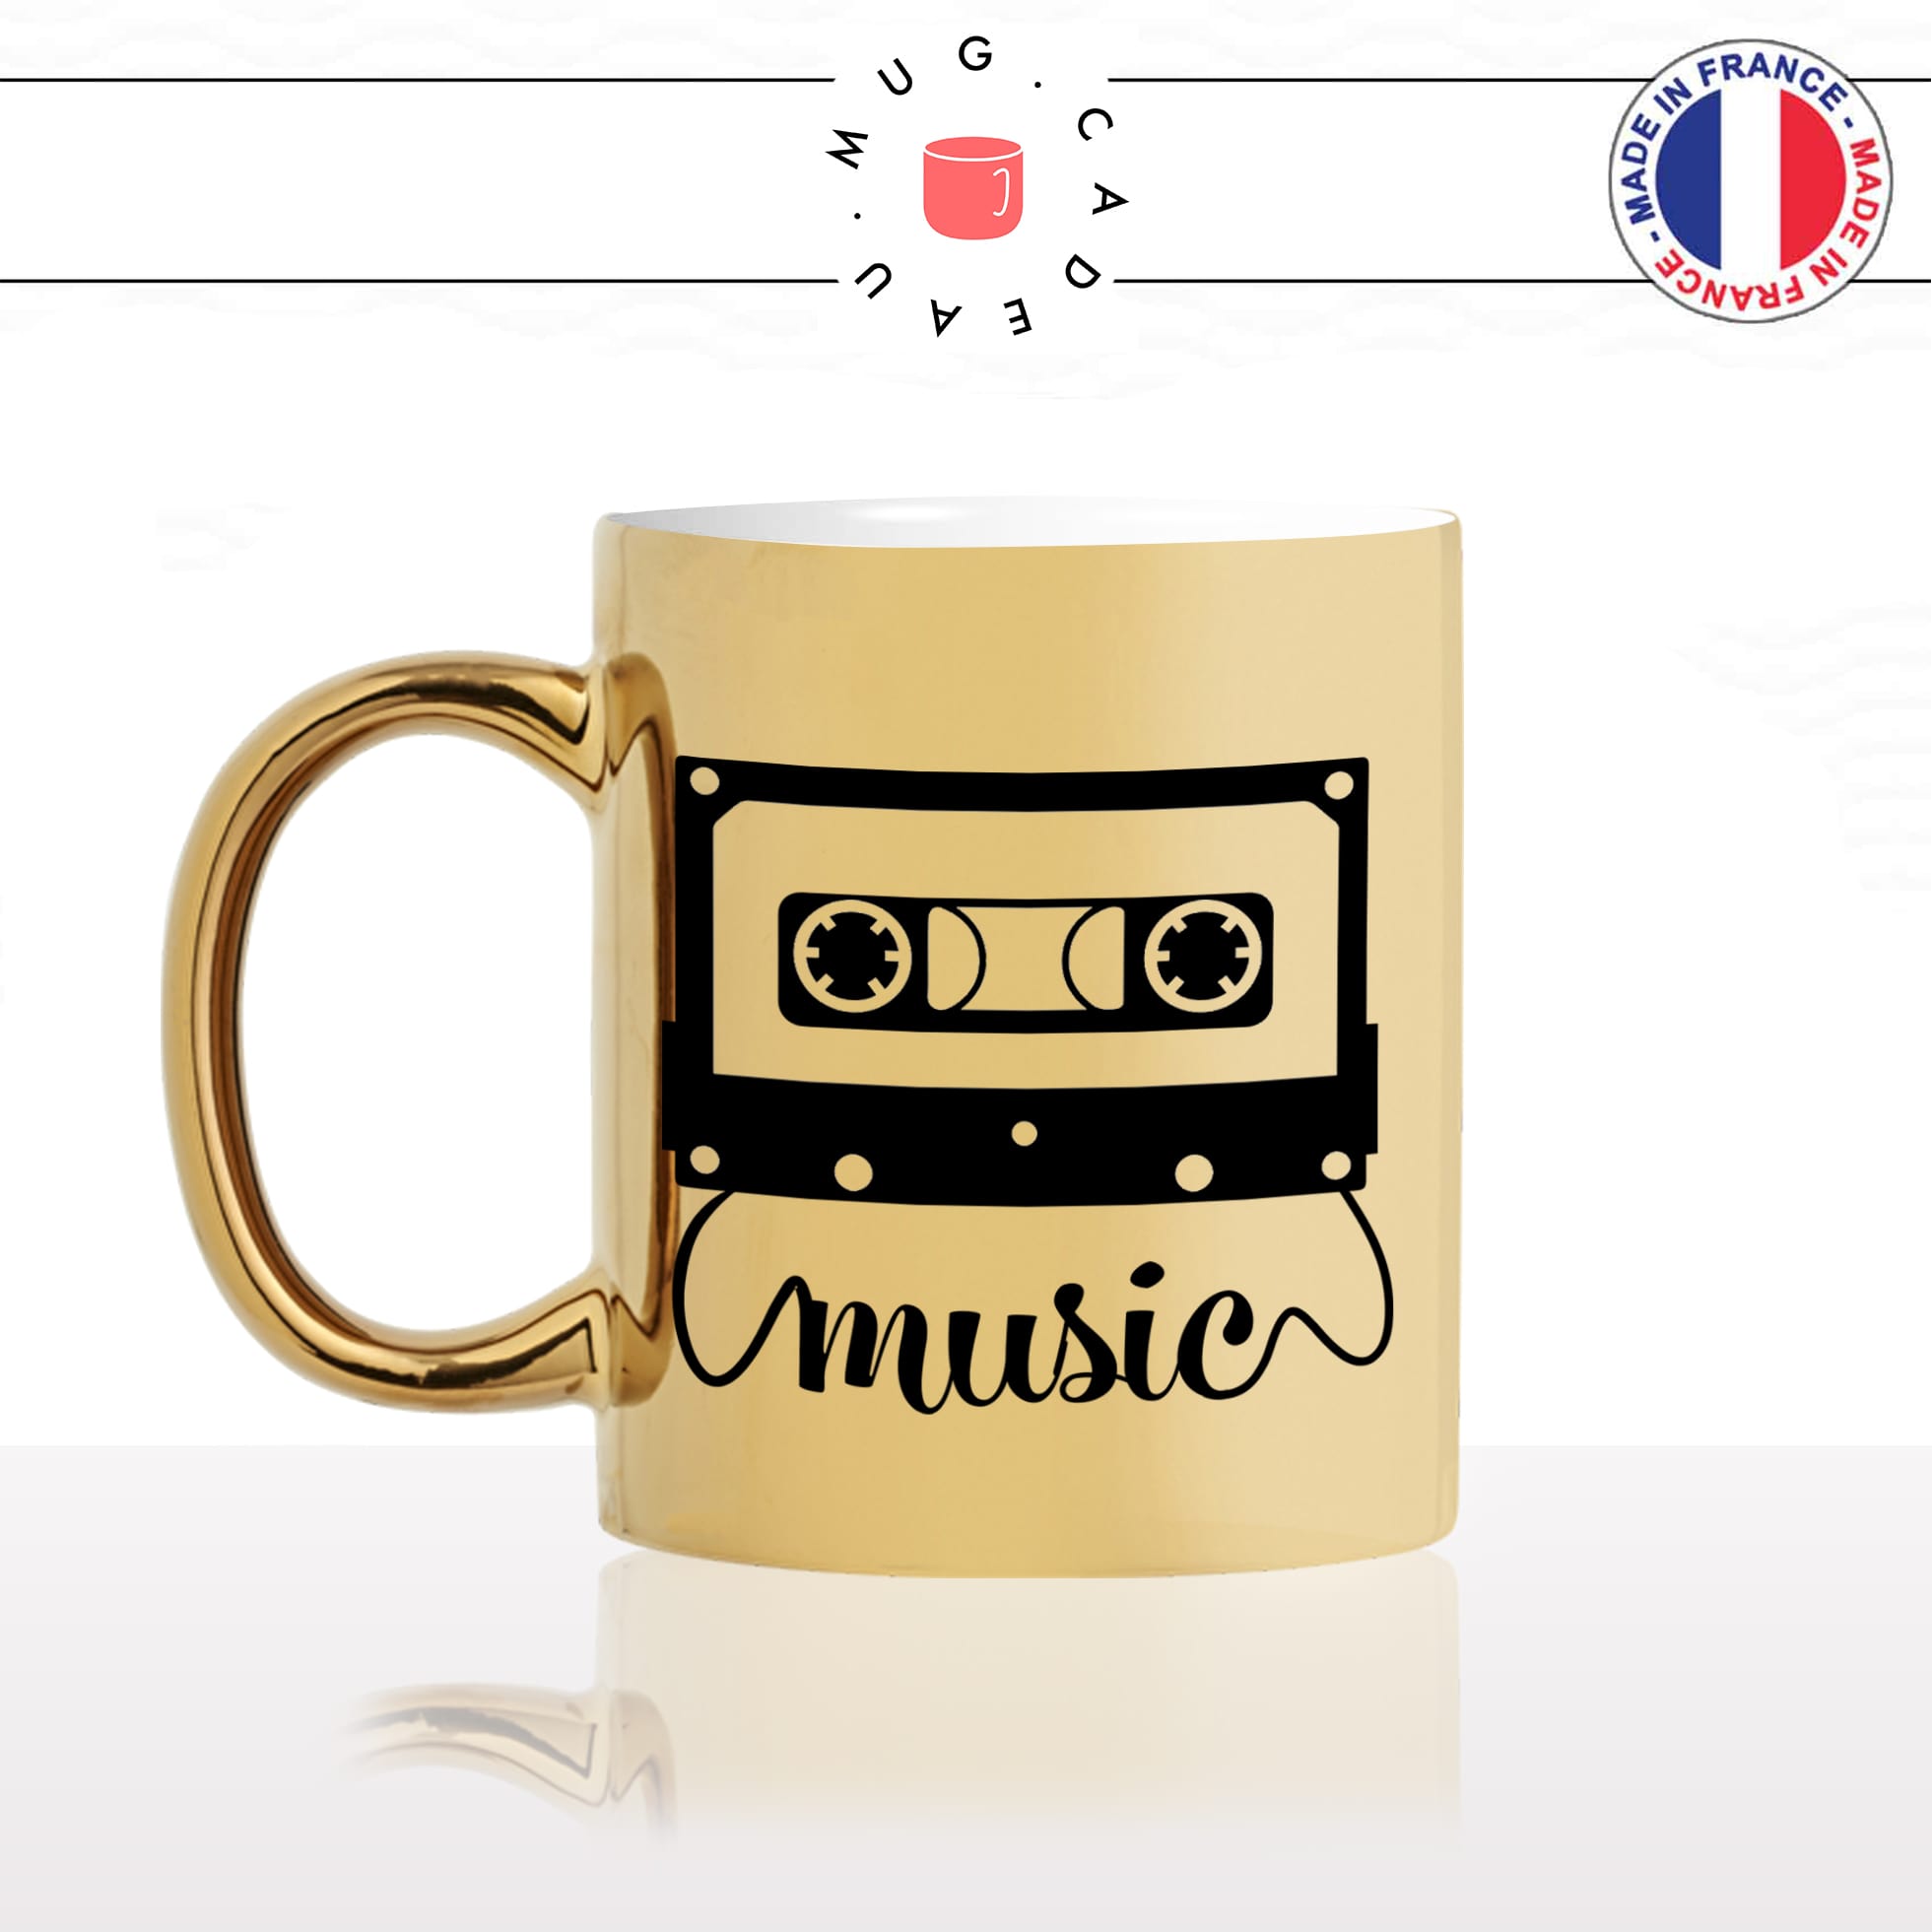 mug-tasse-or-gold-casette-de-musique-music-chansons-année-80-post-radio-fan-chanteur-idée-cadeau-originale-fun-personnalisé-café-thé-min